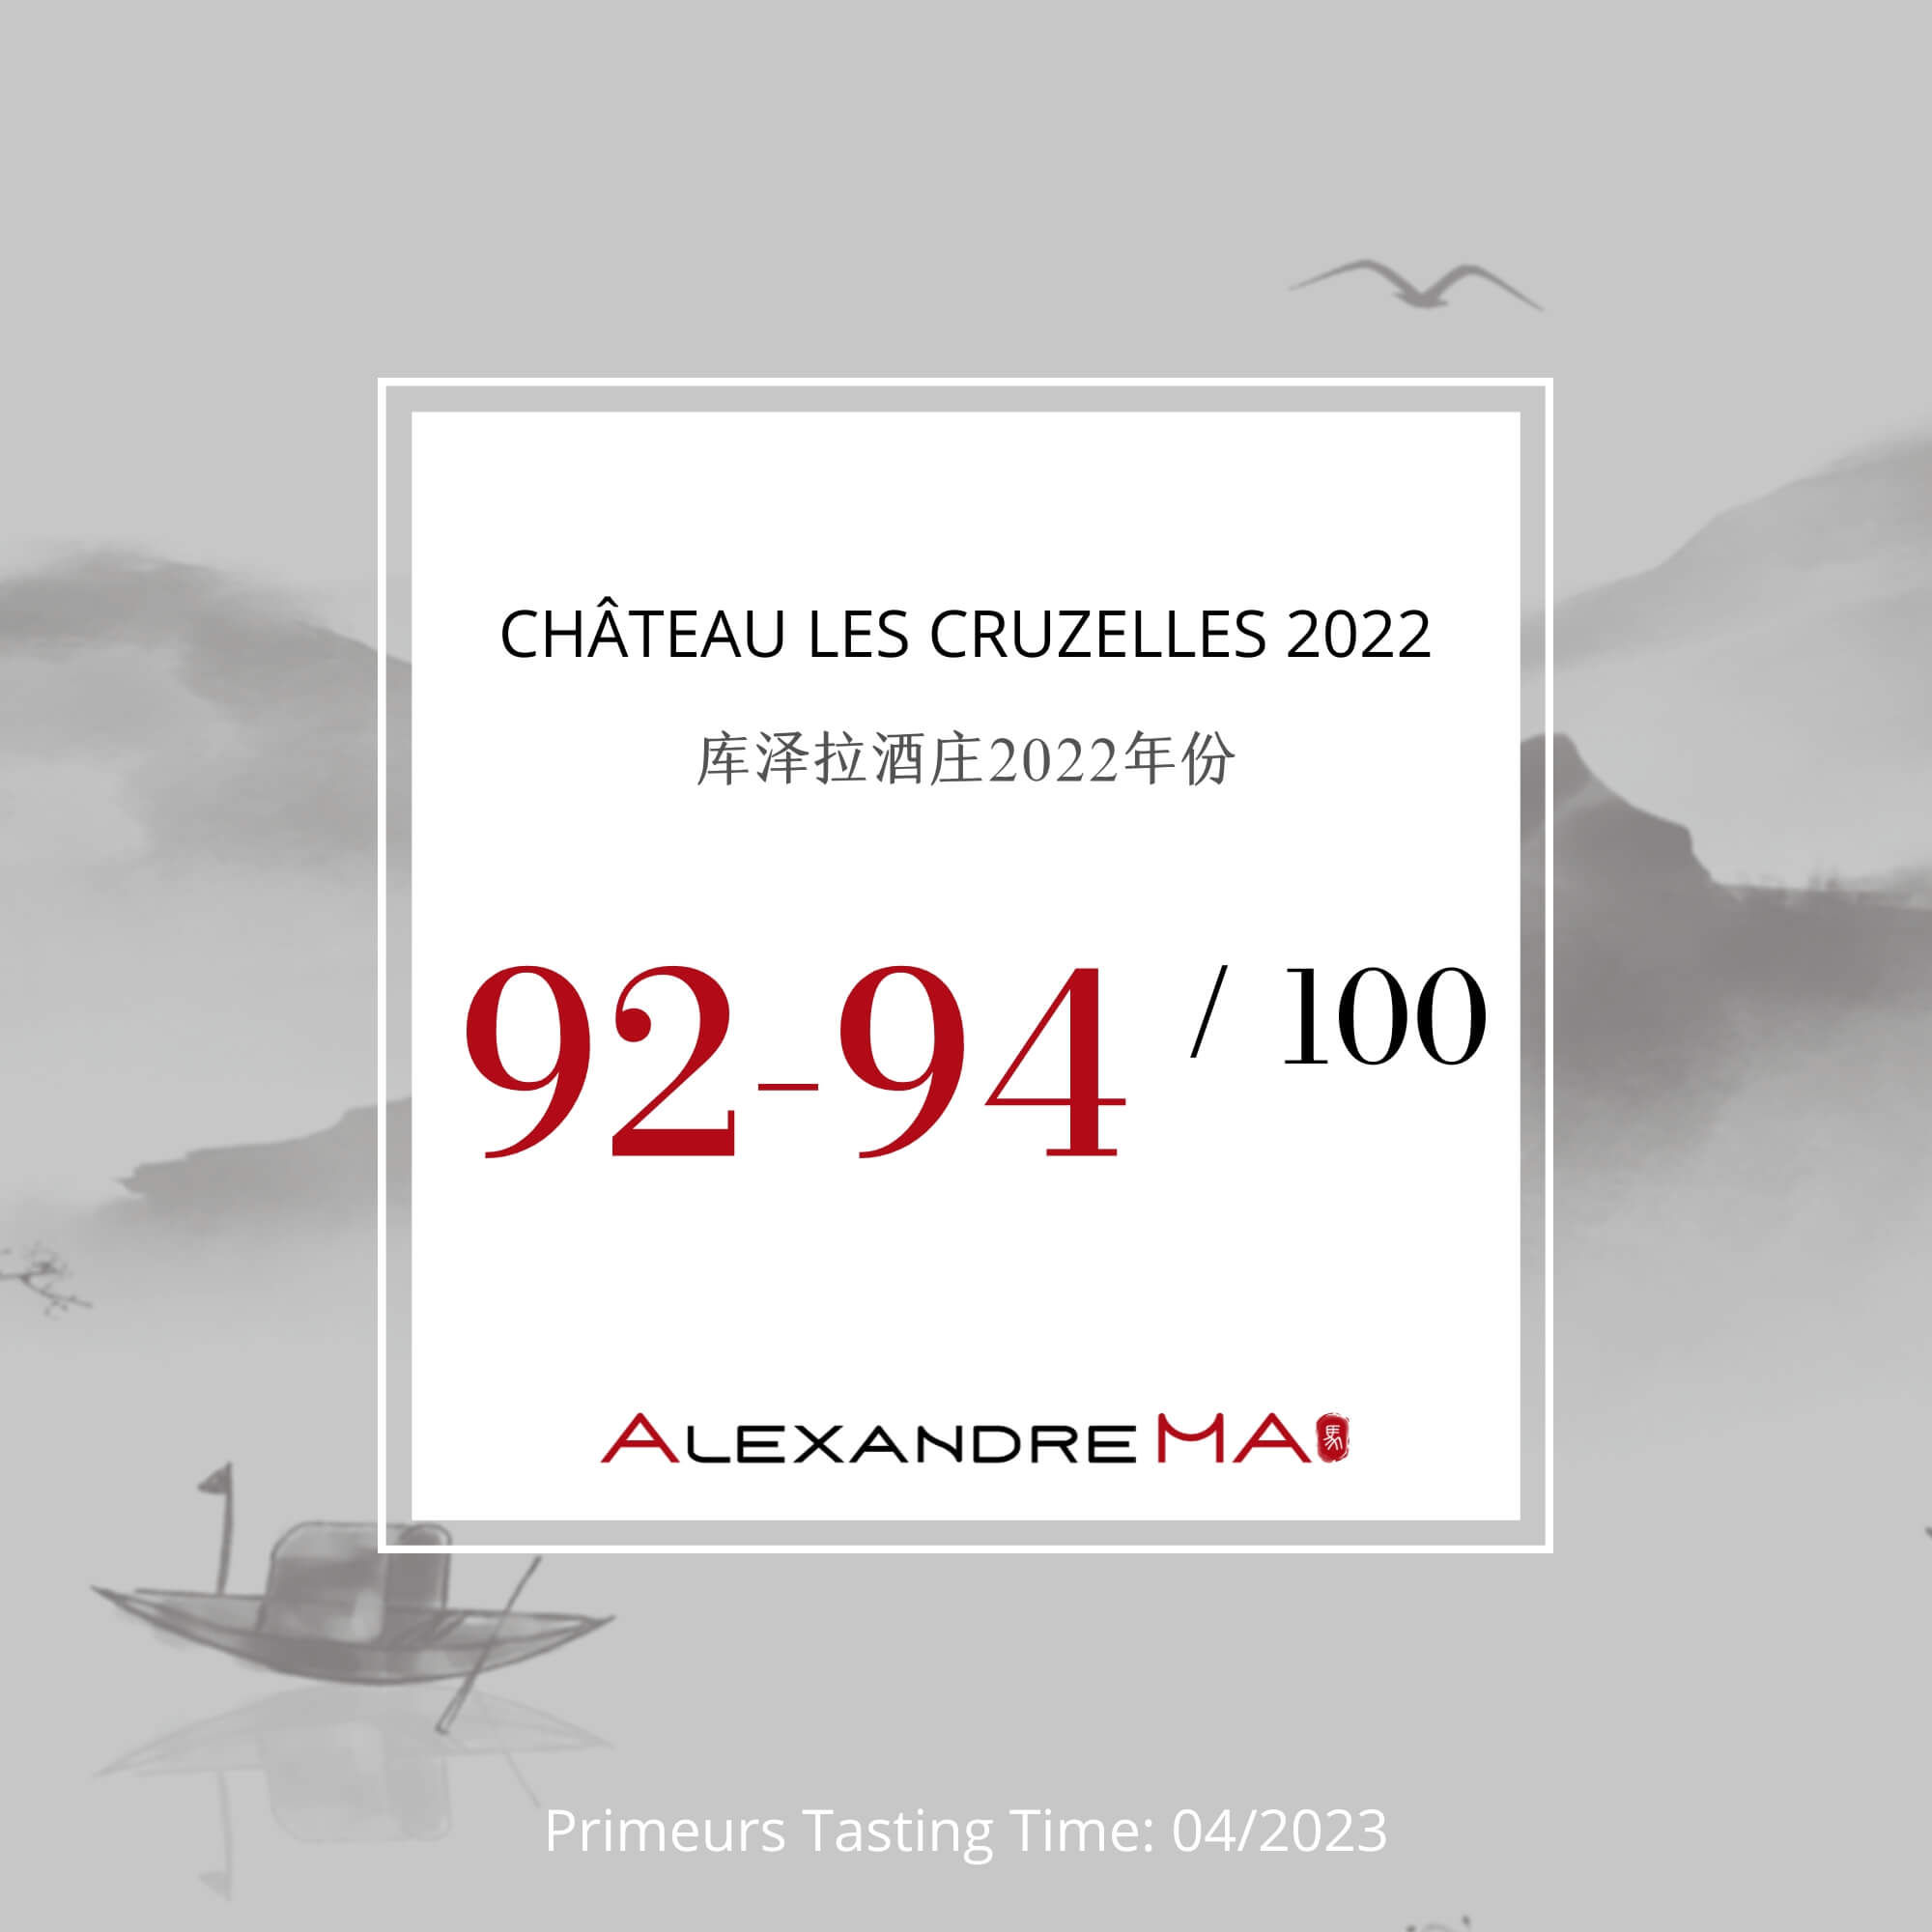 Château Les Cruzelles 2022 Primeurs - Alexandre MA